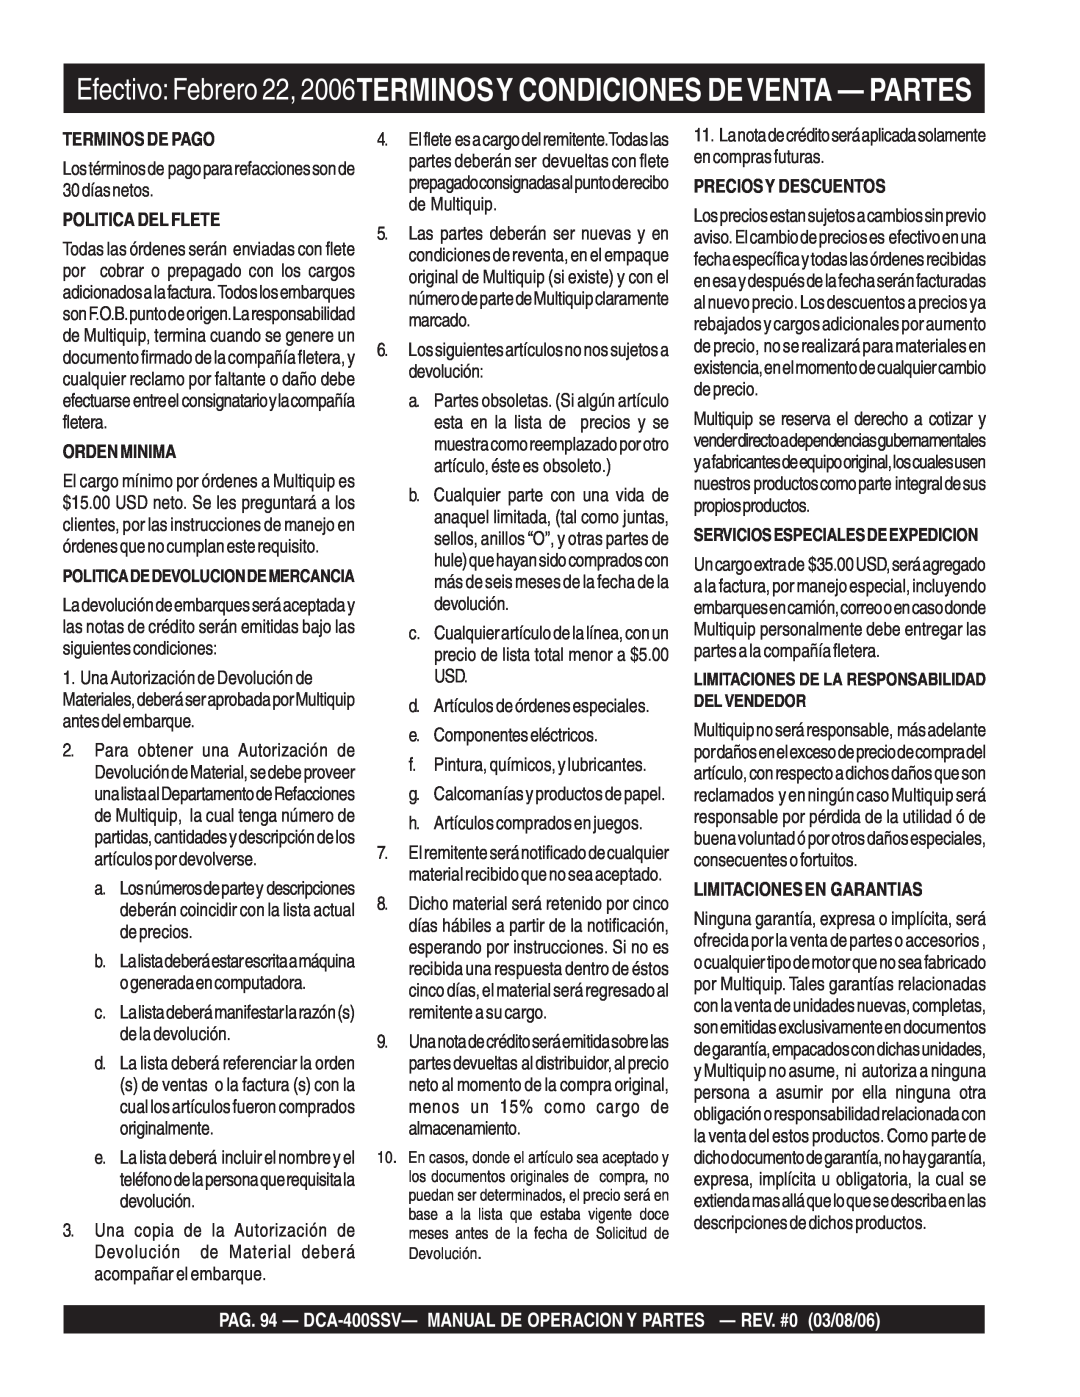 Multiquip DCA-400SSV Terminos De Pago, Politica Del Flete, Ordenminima, e.Componenteseléctricos, Preciosy Descuentos 